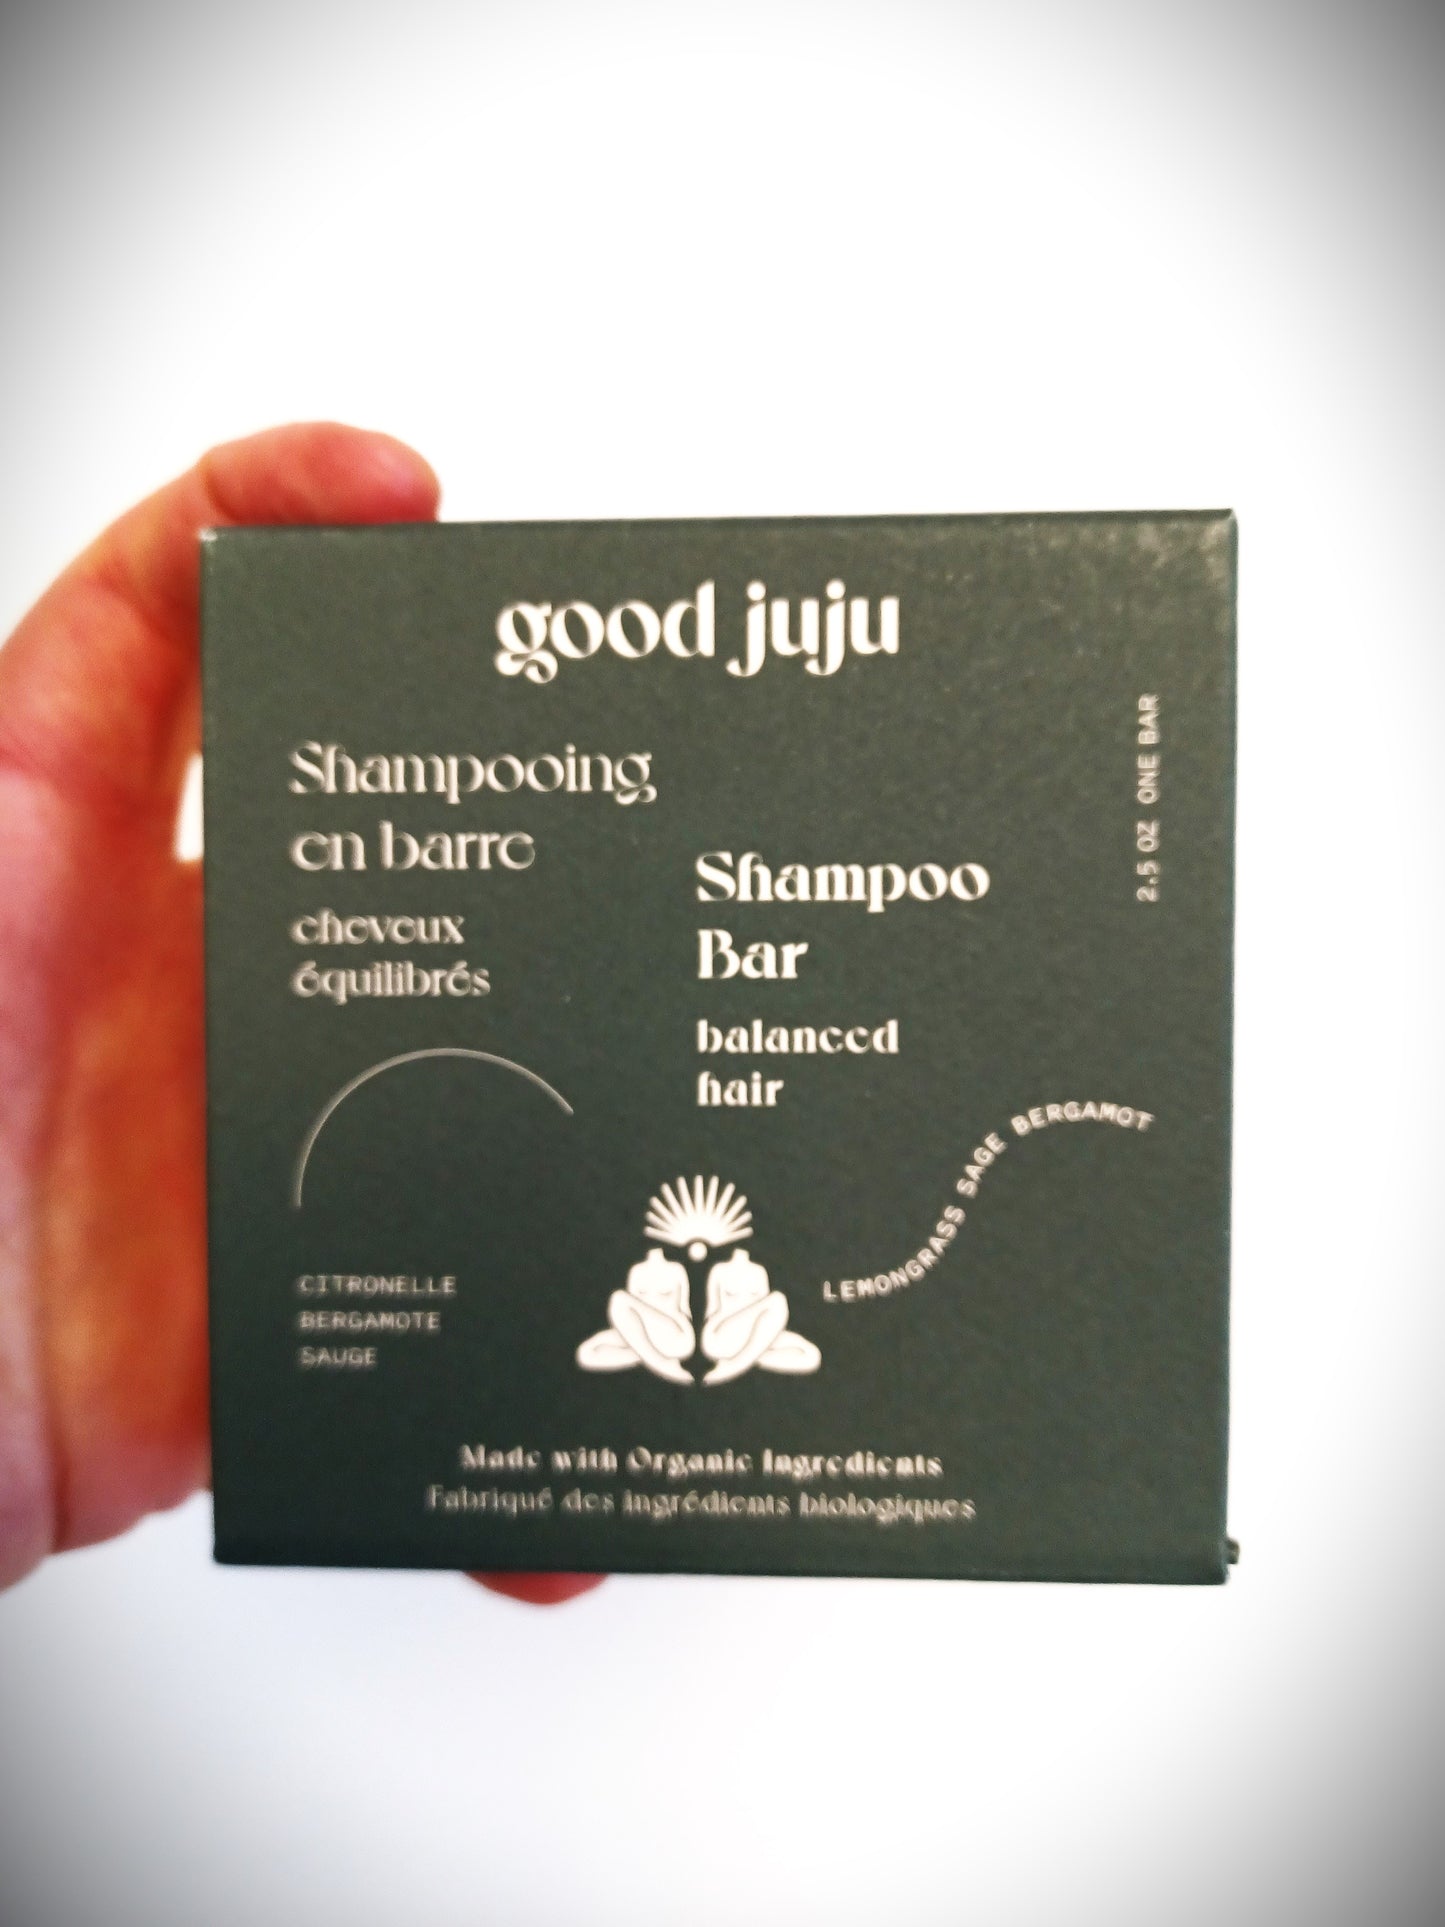 Good Juju Rice Protein Shampoo Bar for Balanced hair.